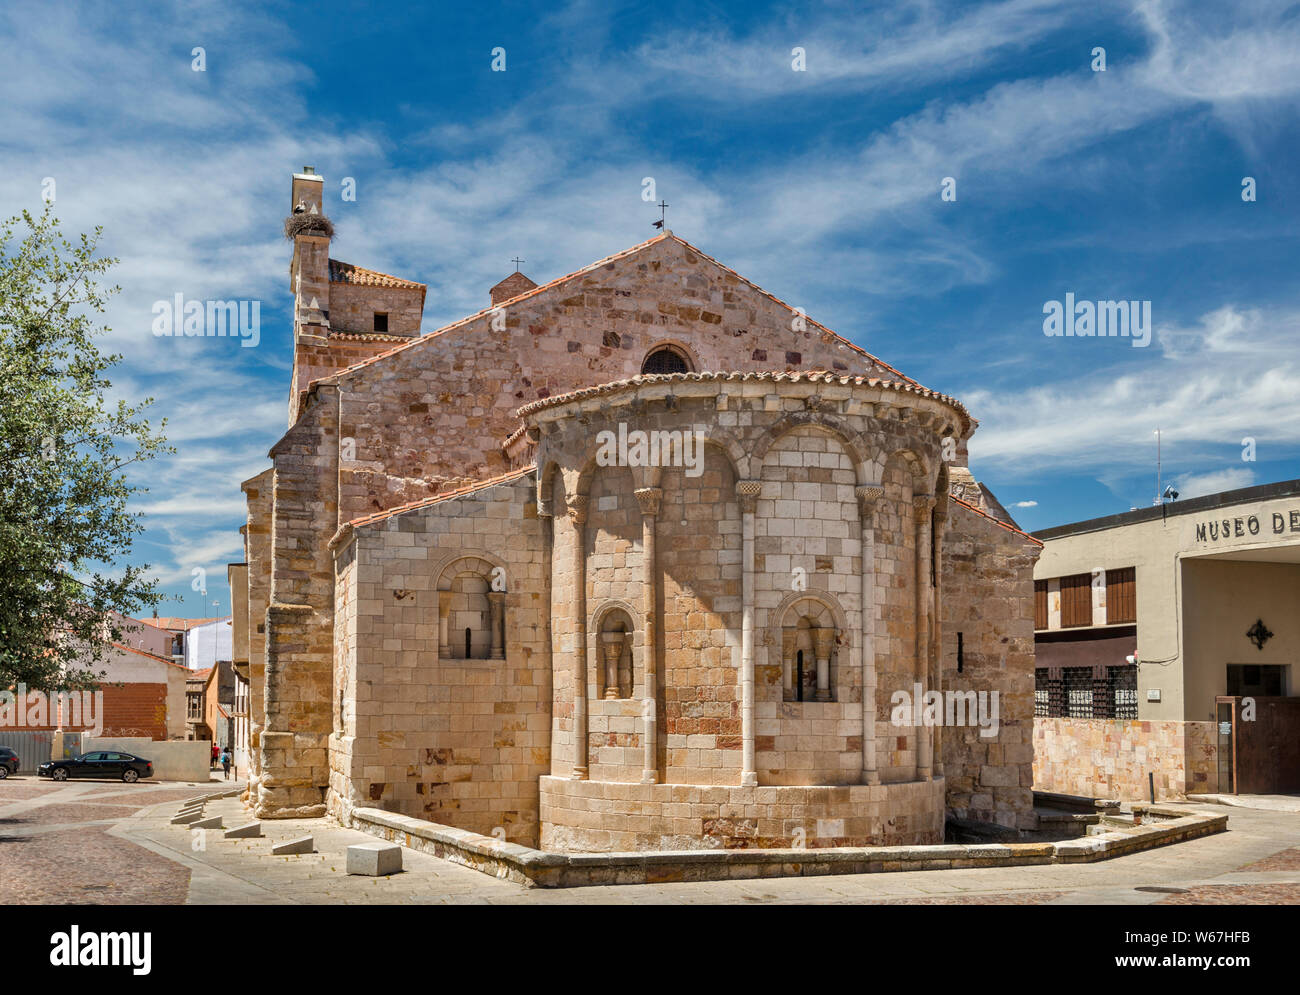 Iglesia de Santa Maria La Nueva, 12th century, Romanesque style church, in Zamora, Castilla y Leon, Spain Stock Photo